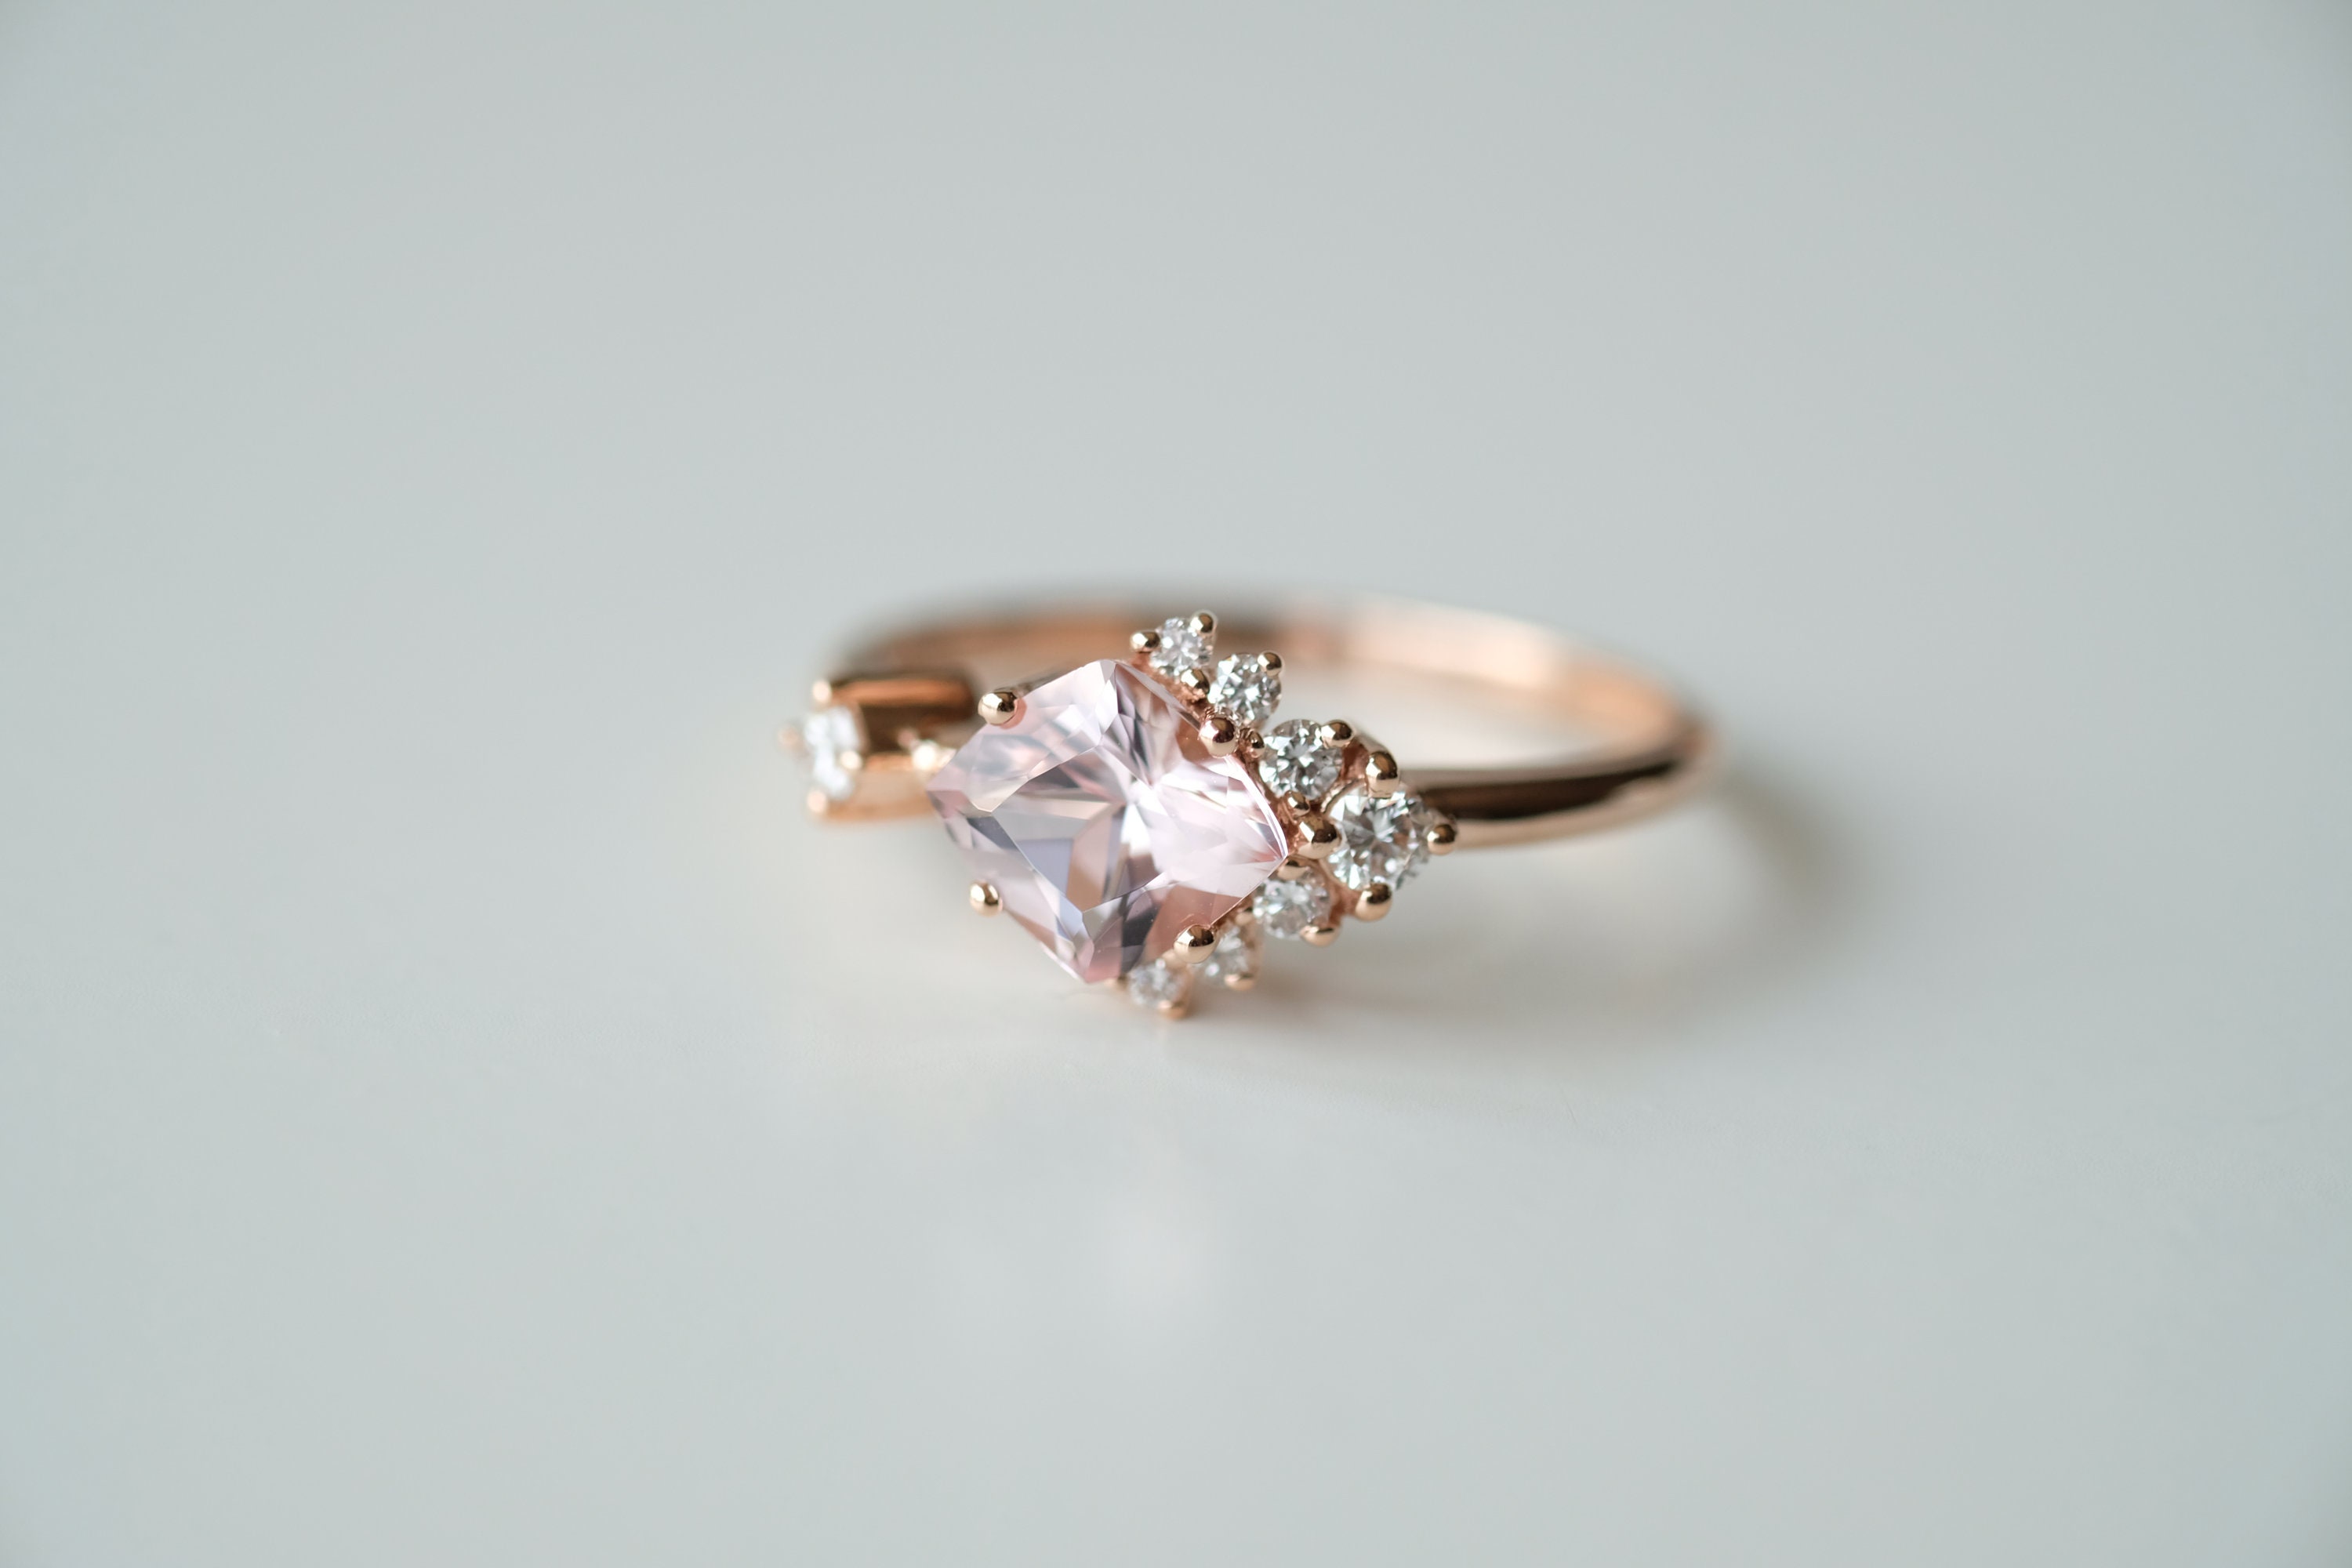 1 Carat Morganite Engagement Ring Pink Stone Engagement Ring | Etsy